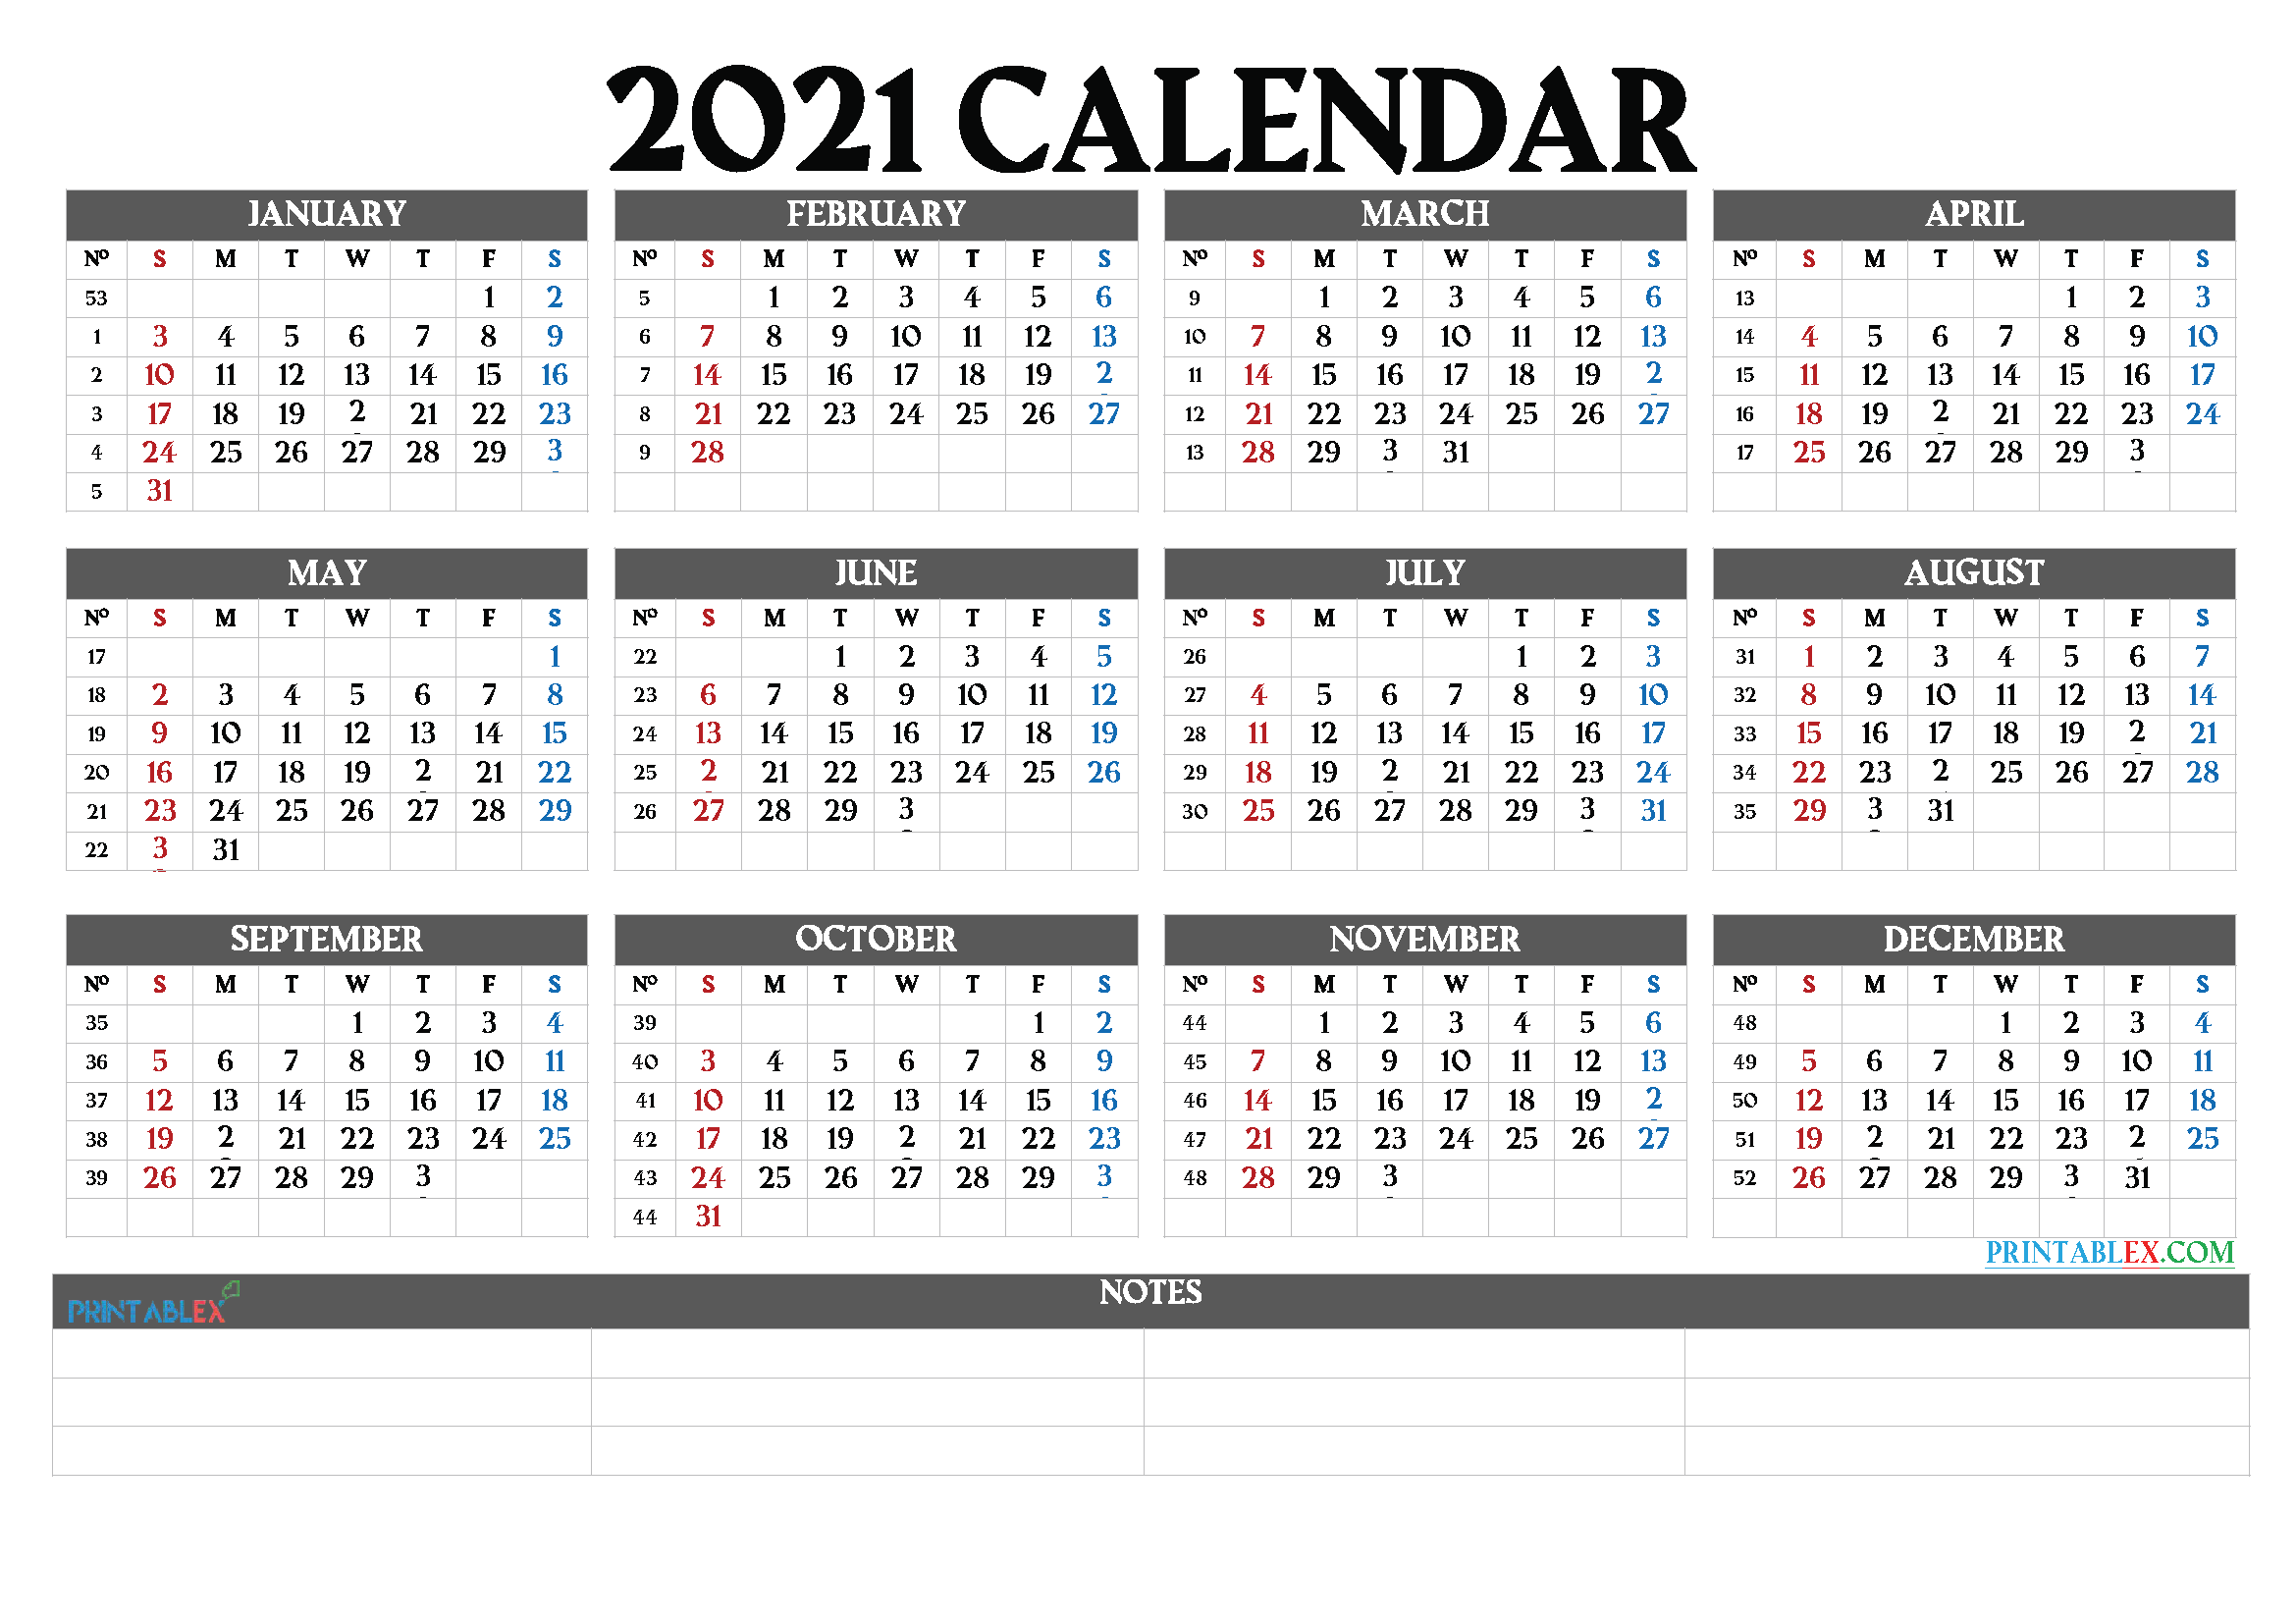 2021 Calendar With Week Numbers Printable 21ytw61